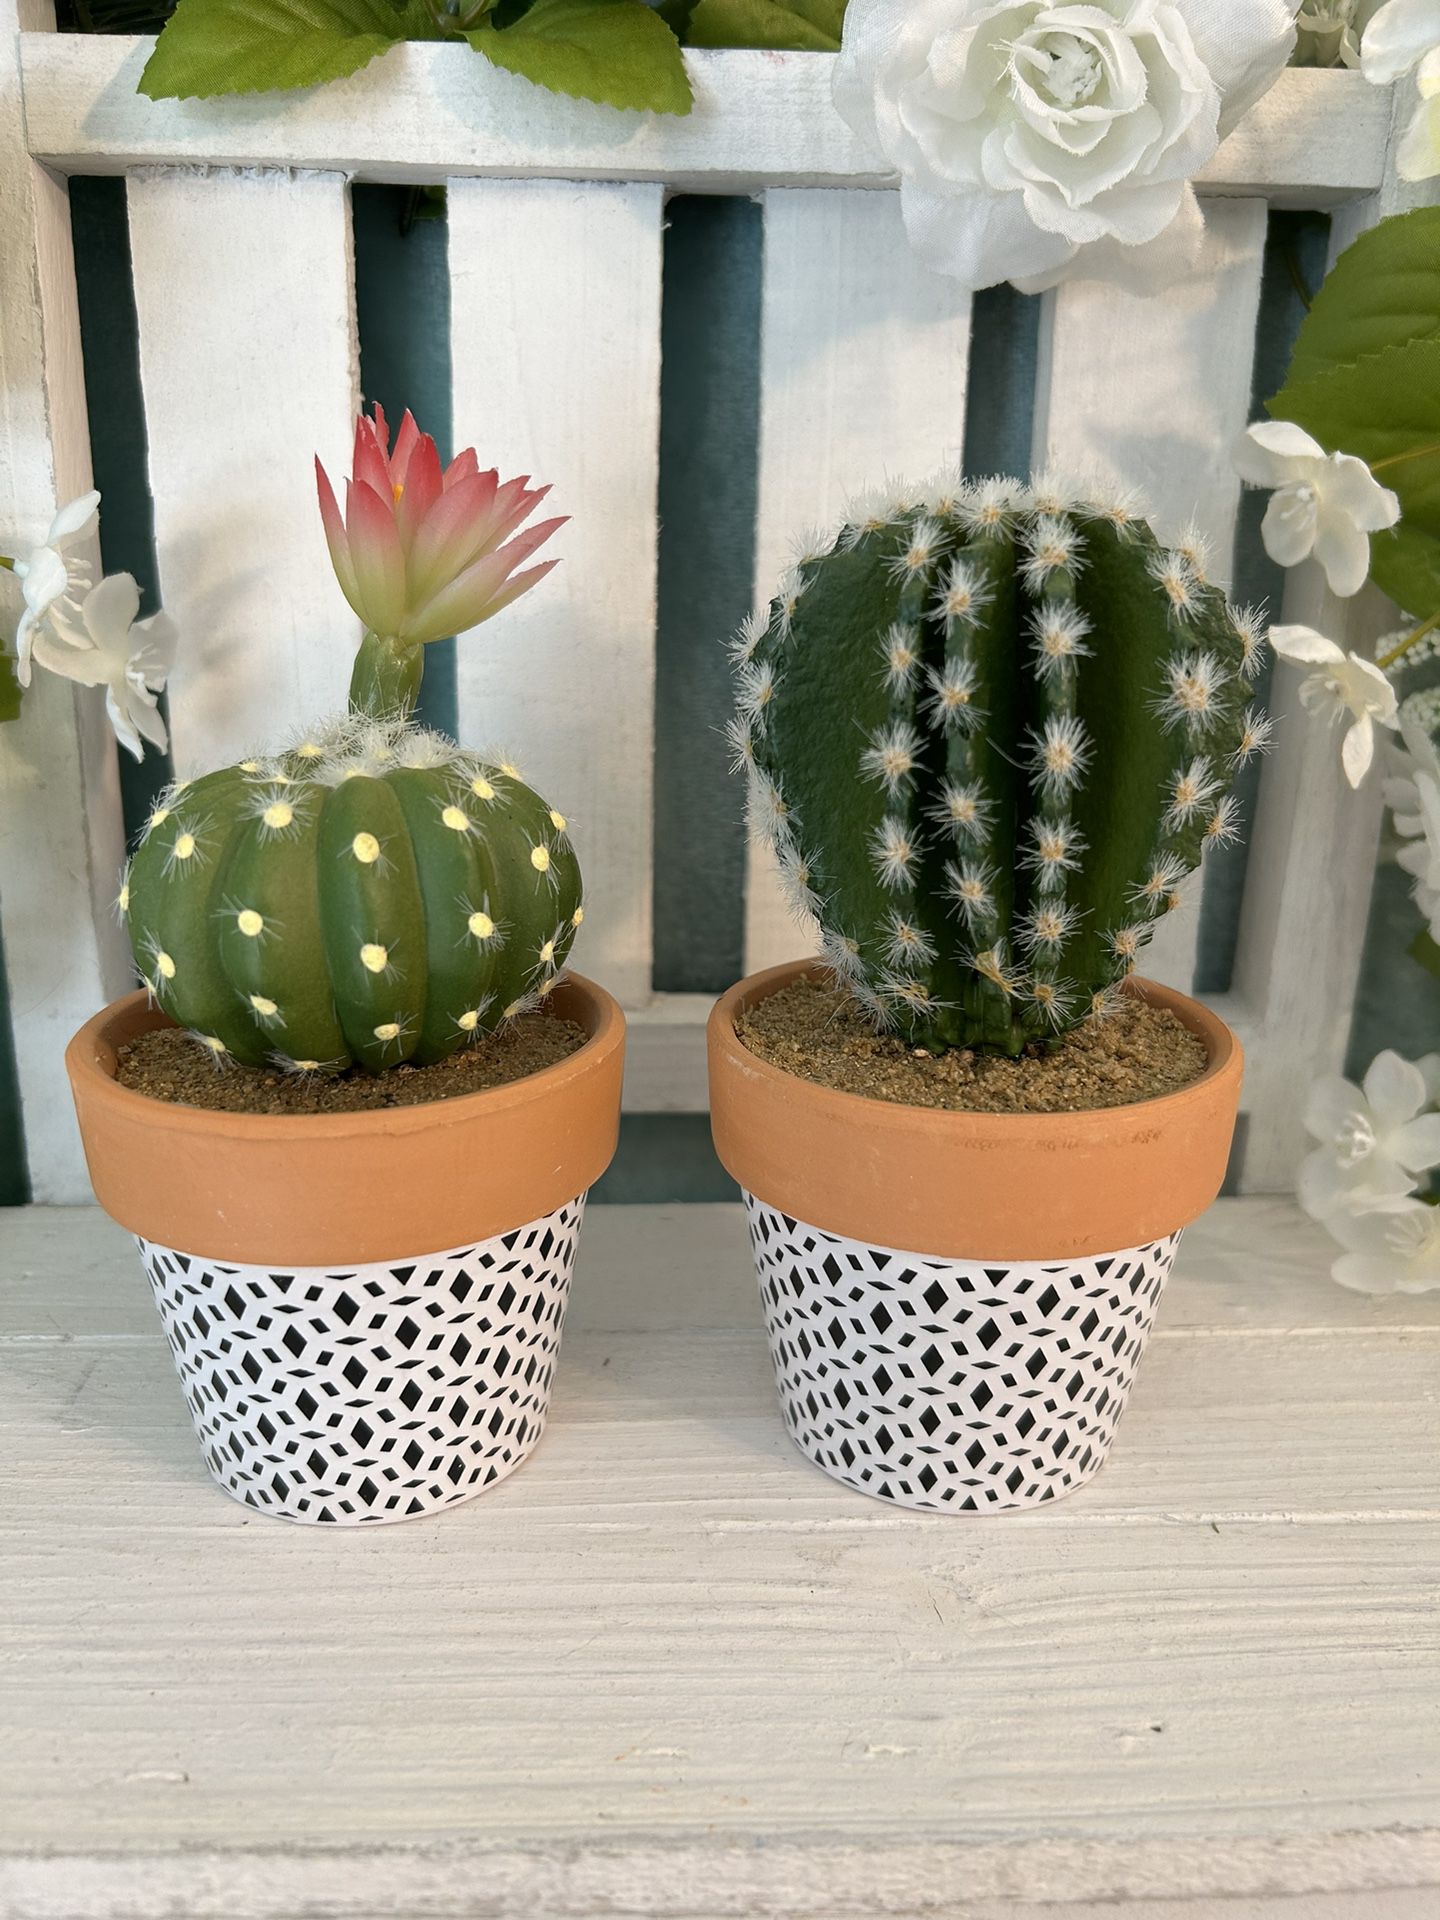 Tier tray decor 2 faux mini cactus plants in pretty garden pots